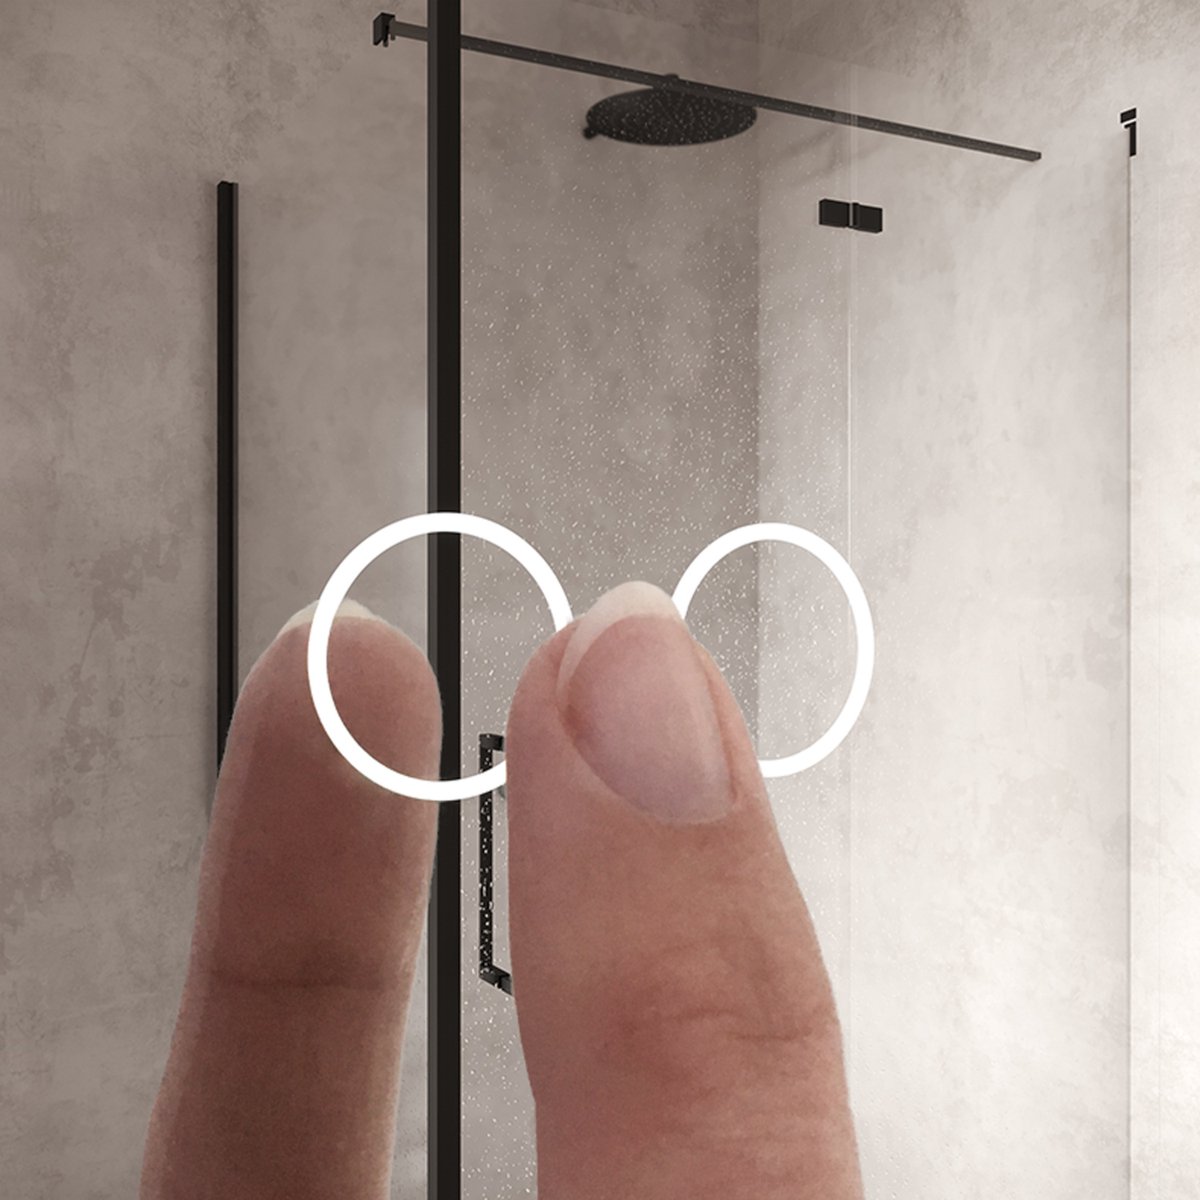 Ovale badkamerspiegel met indirecte verlichting, verwarming, instelbare lichtkleur en dimfunctie 50x100 cm